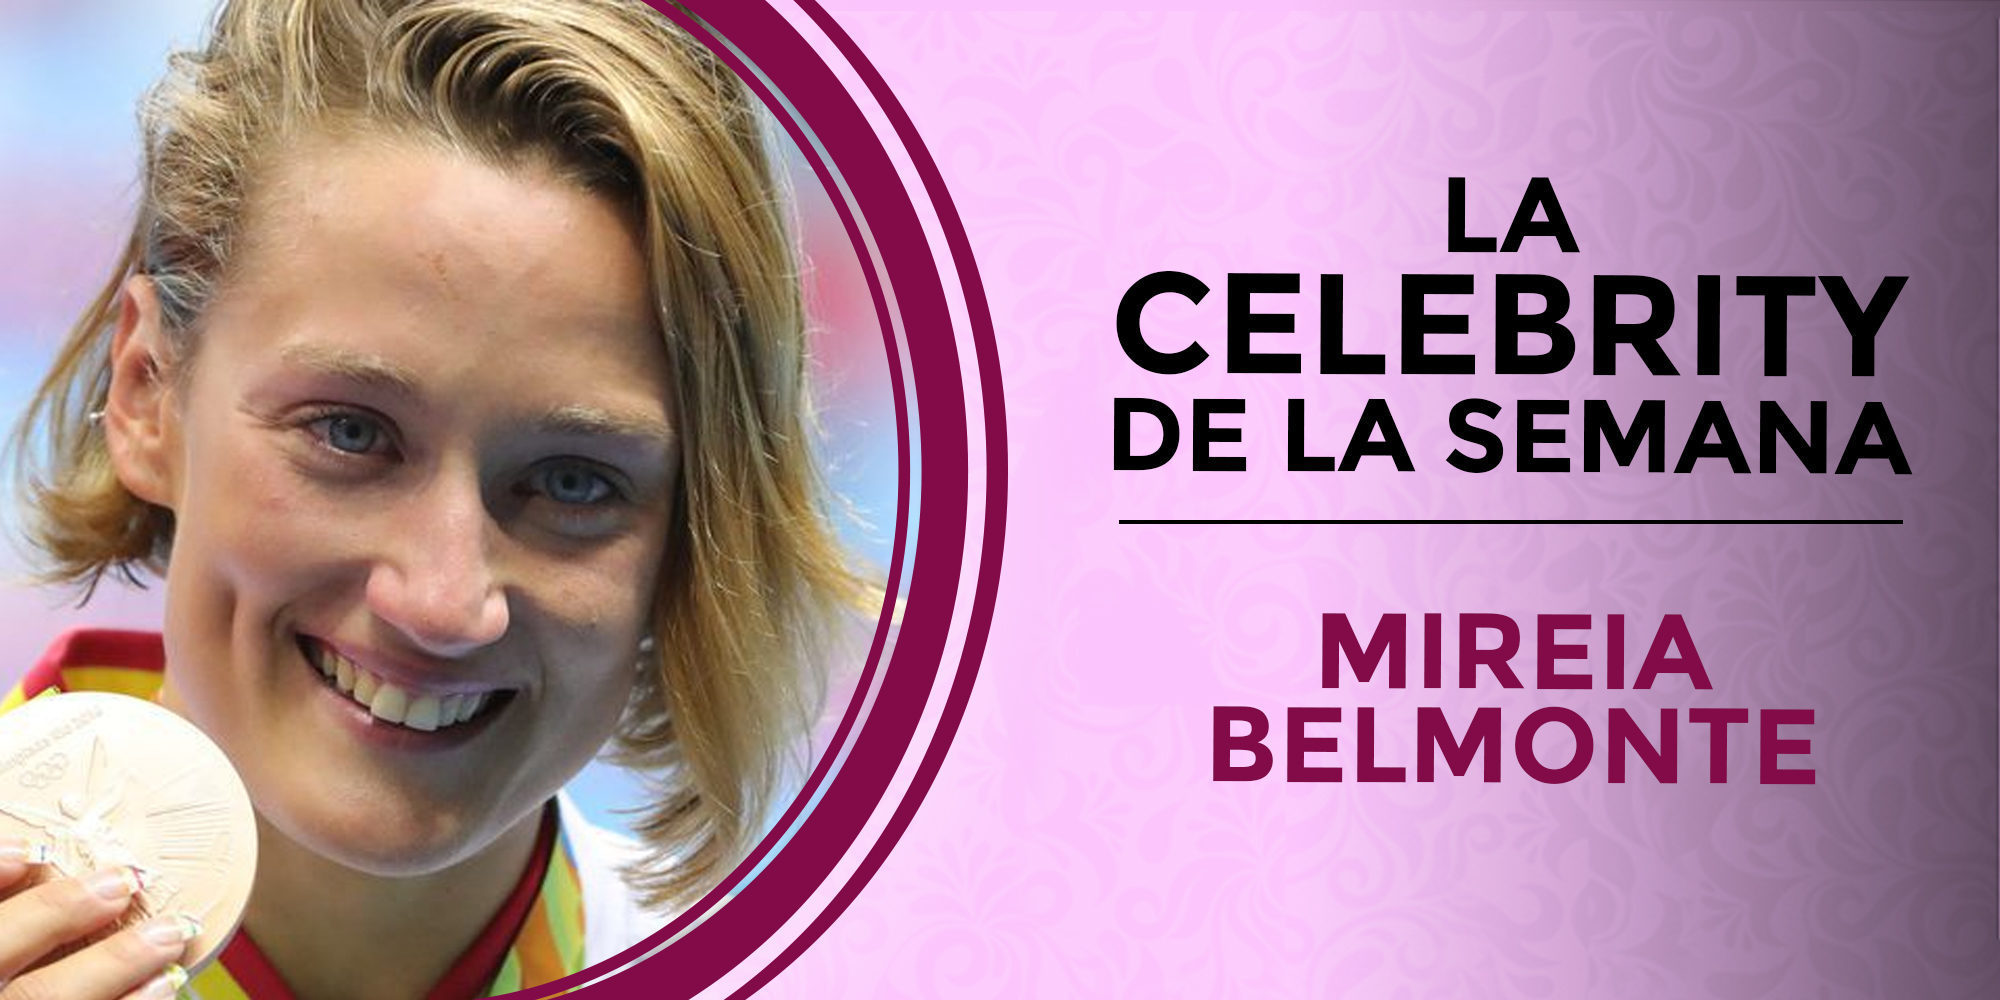 Mireia Belmonte y Maialen Chourraut, celebrities de la semana por sus medallas de oro en Río 2016